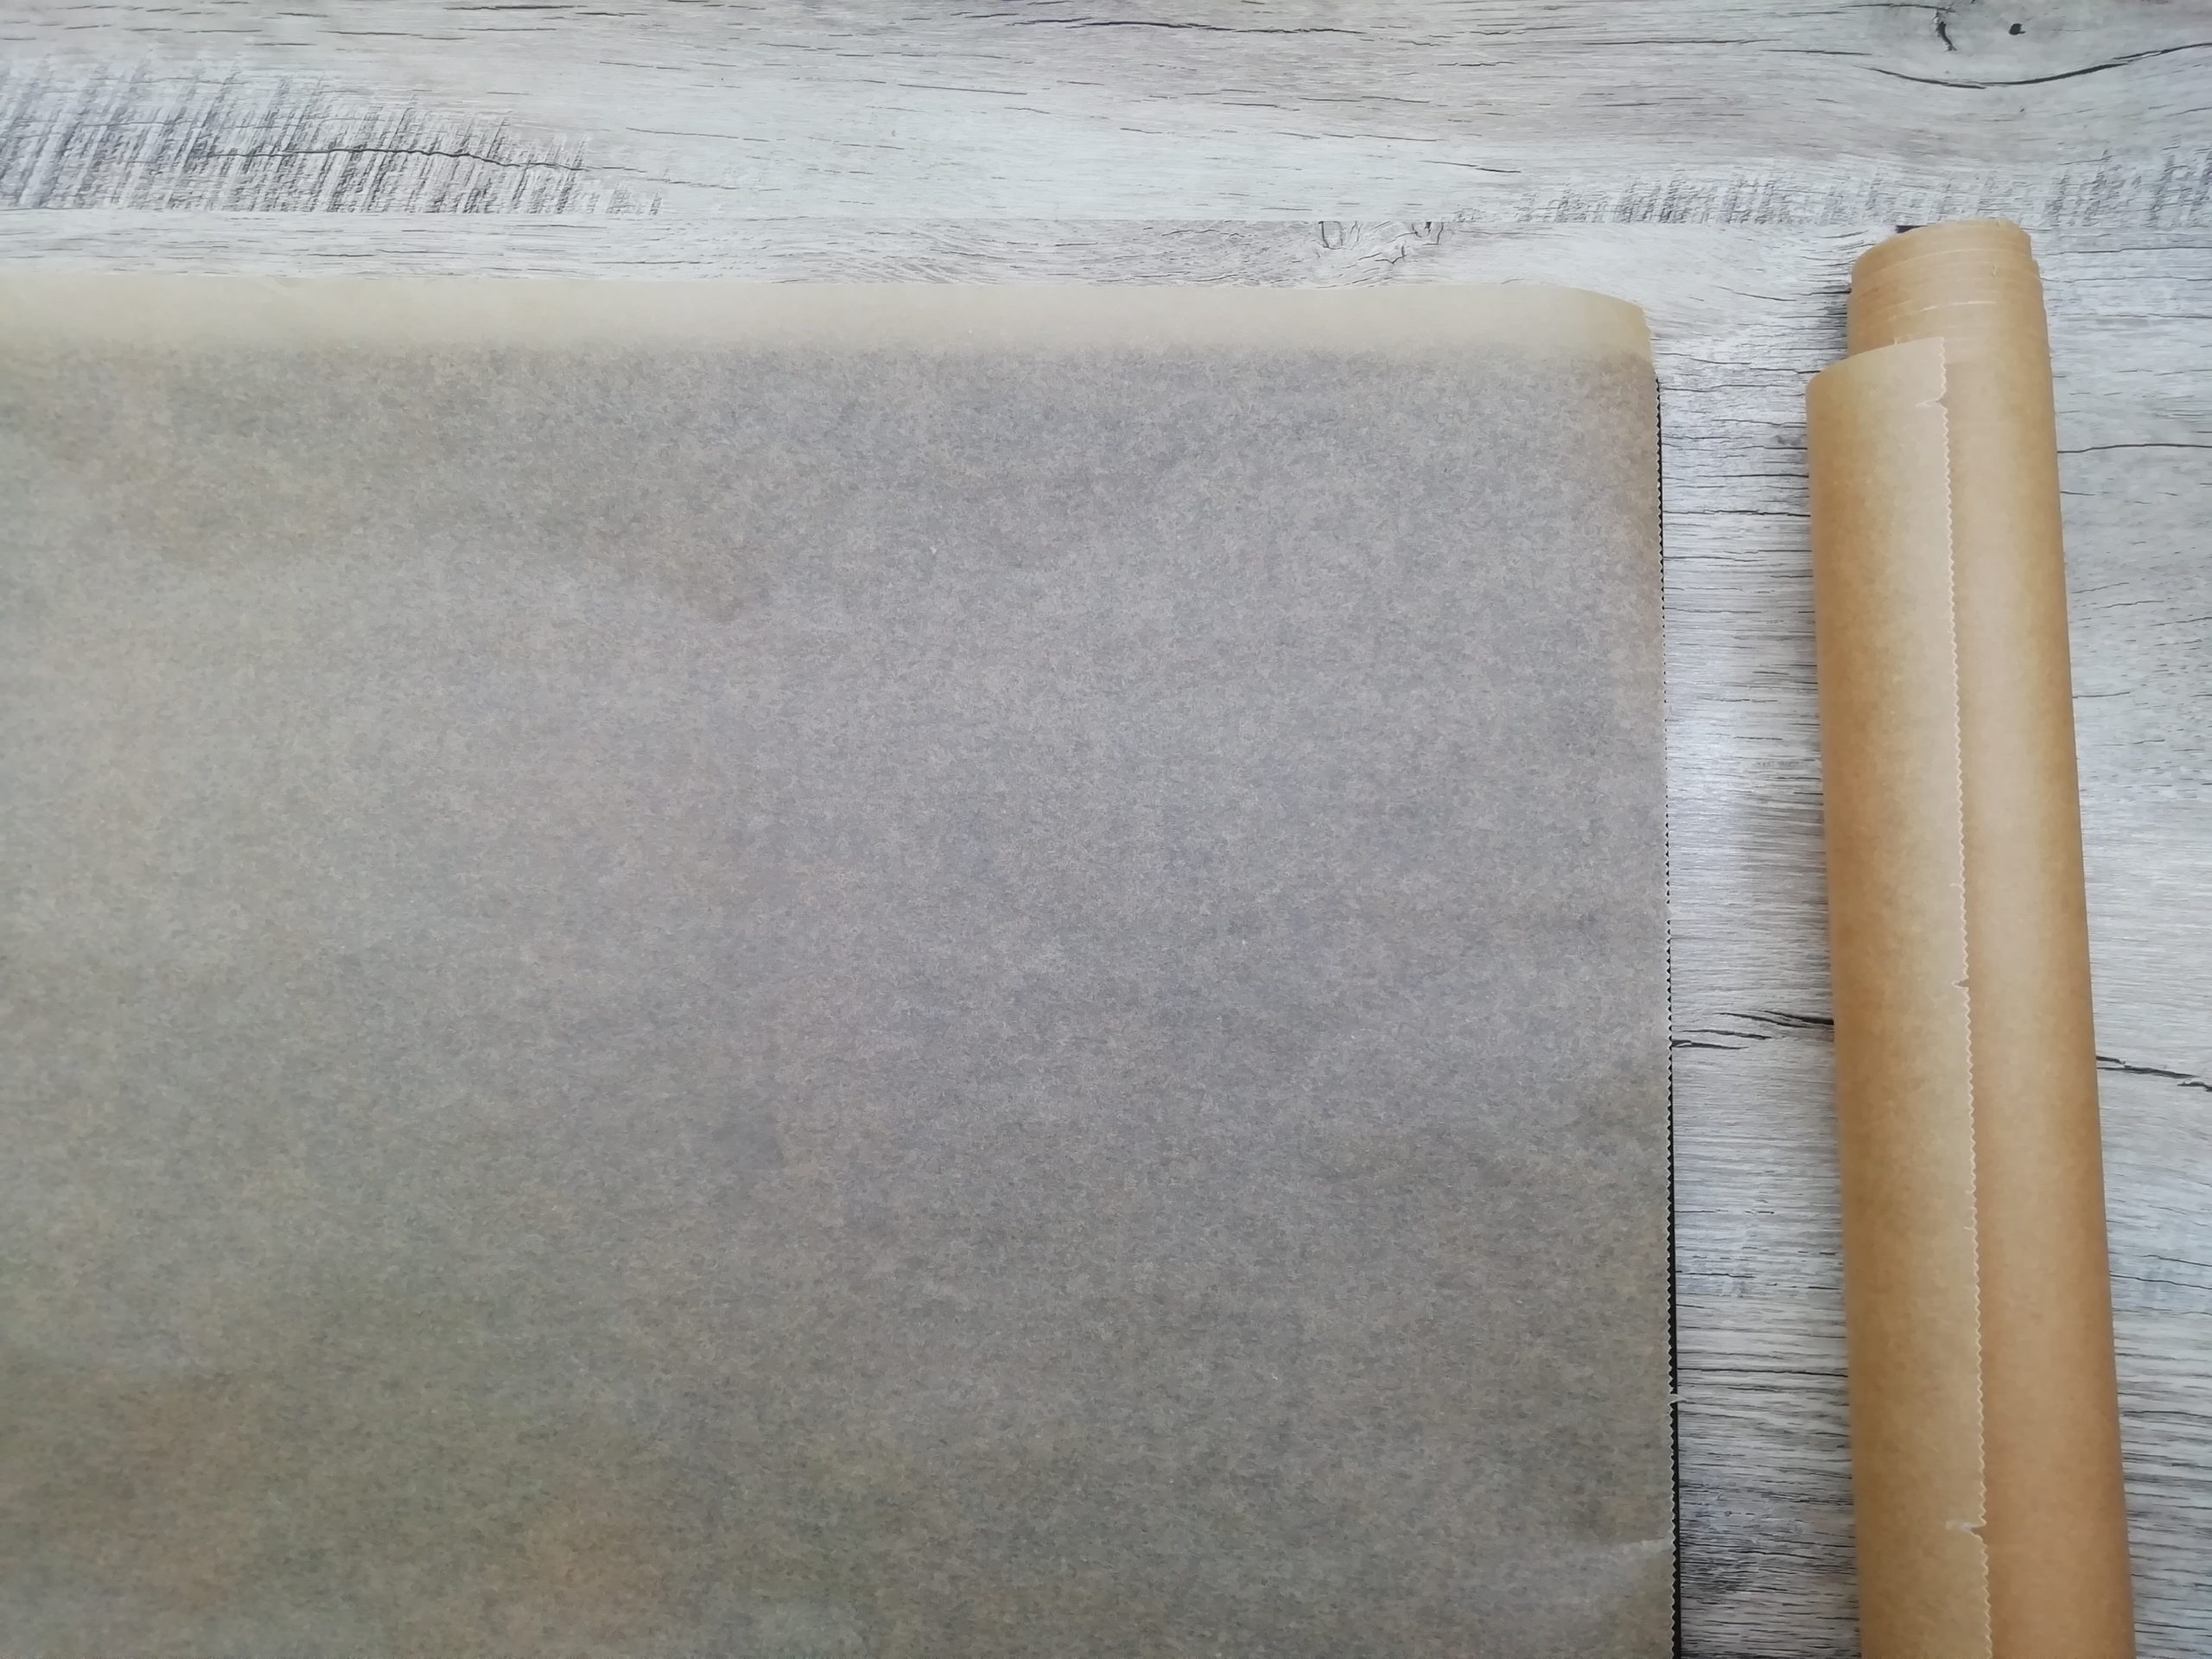 Piekę od 40 lat, ale nie miałam o tym pojęcia: Szef kuchni pokazał, jak używać papieru do pieczenia i folii aluminiowej – różnica jest ogromna!